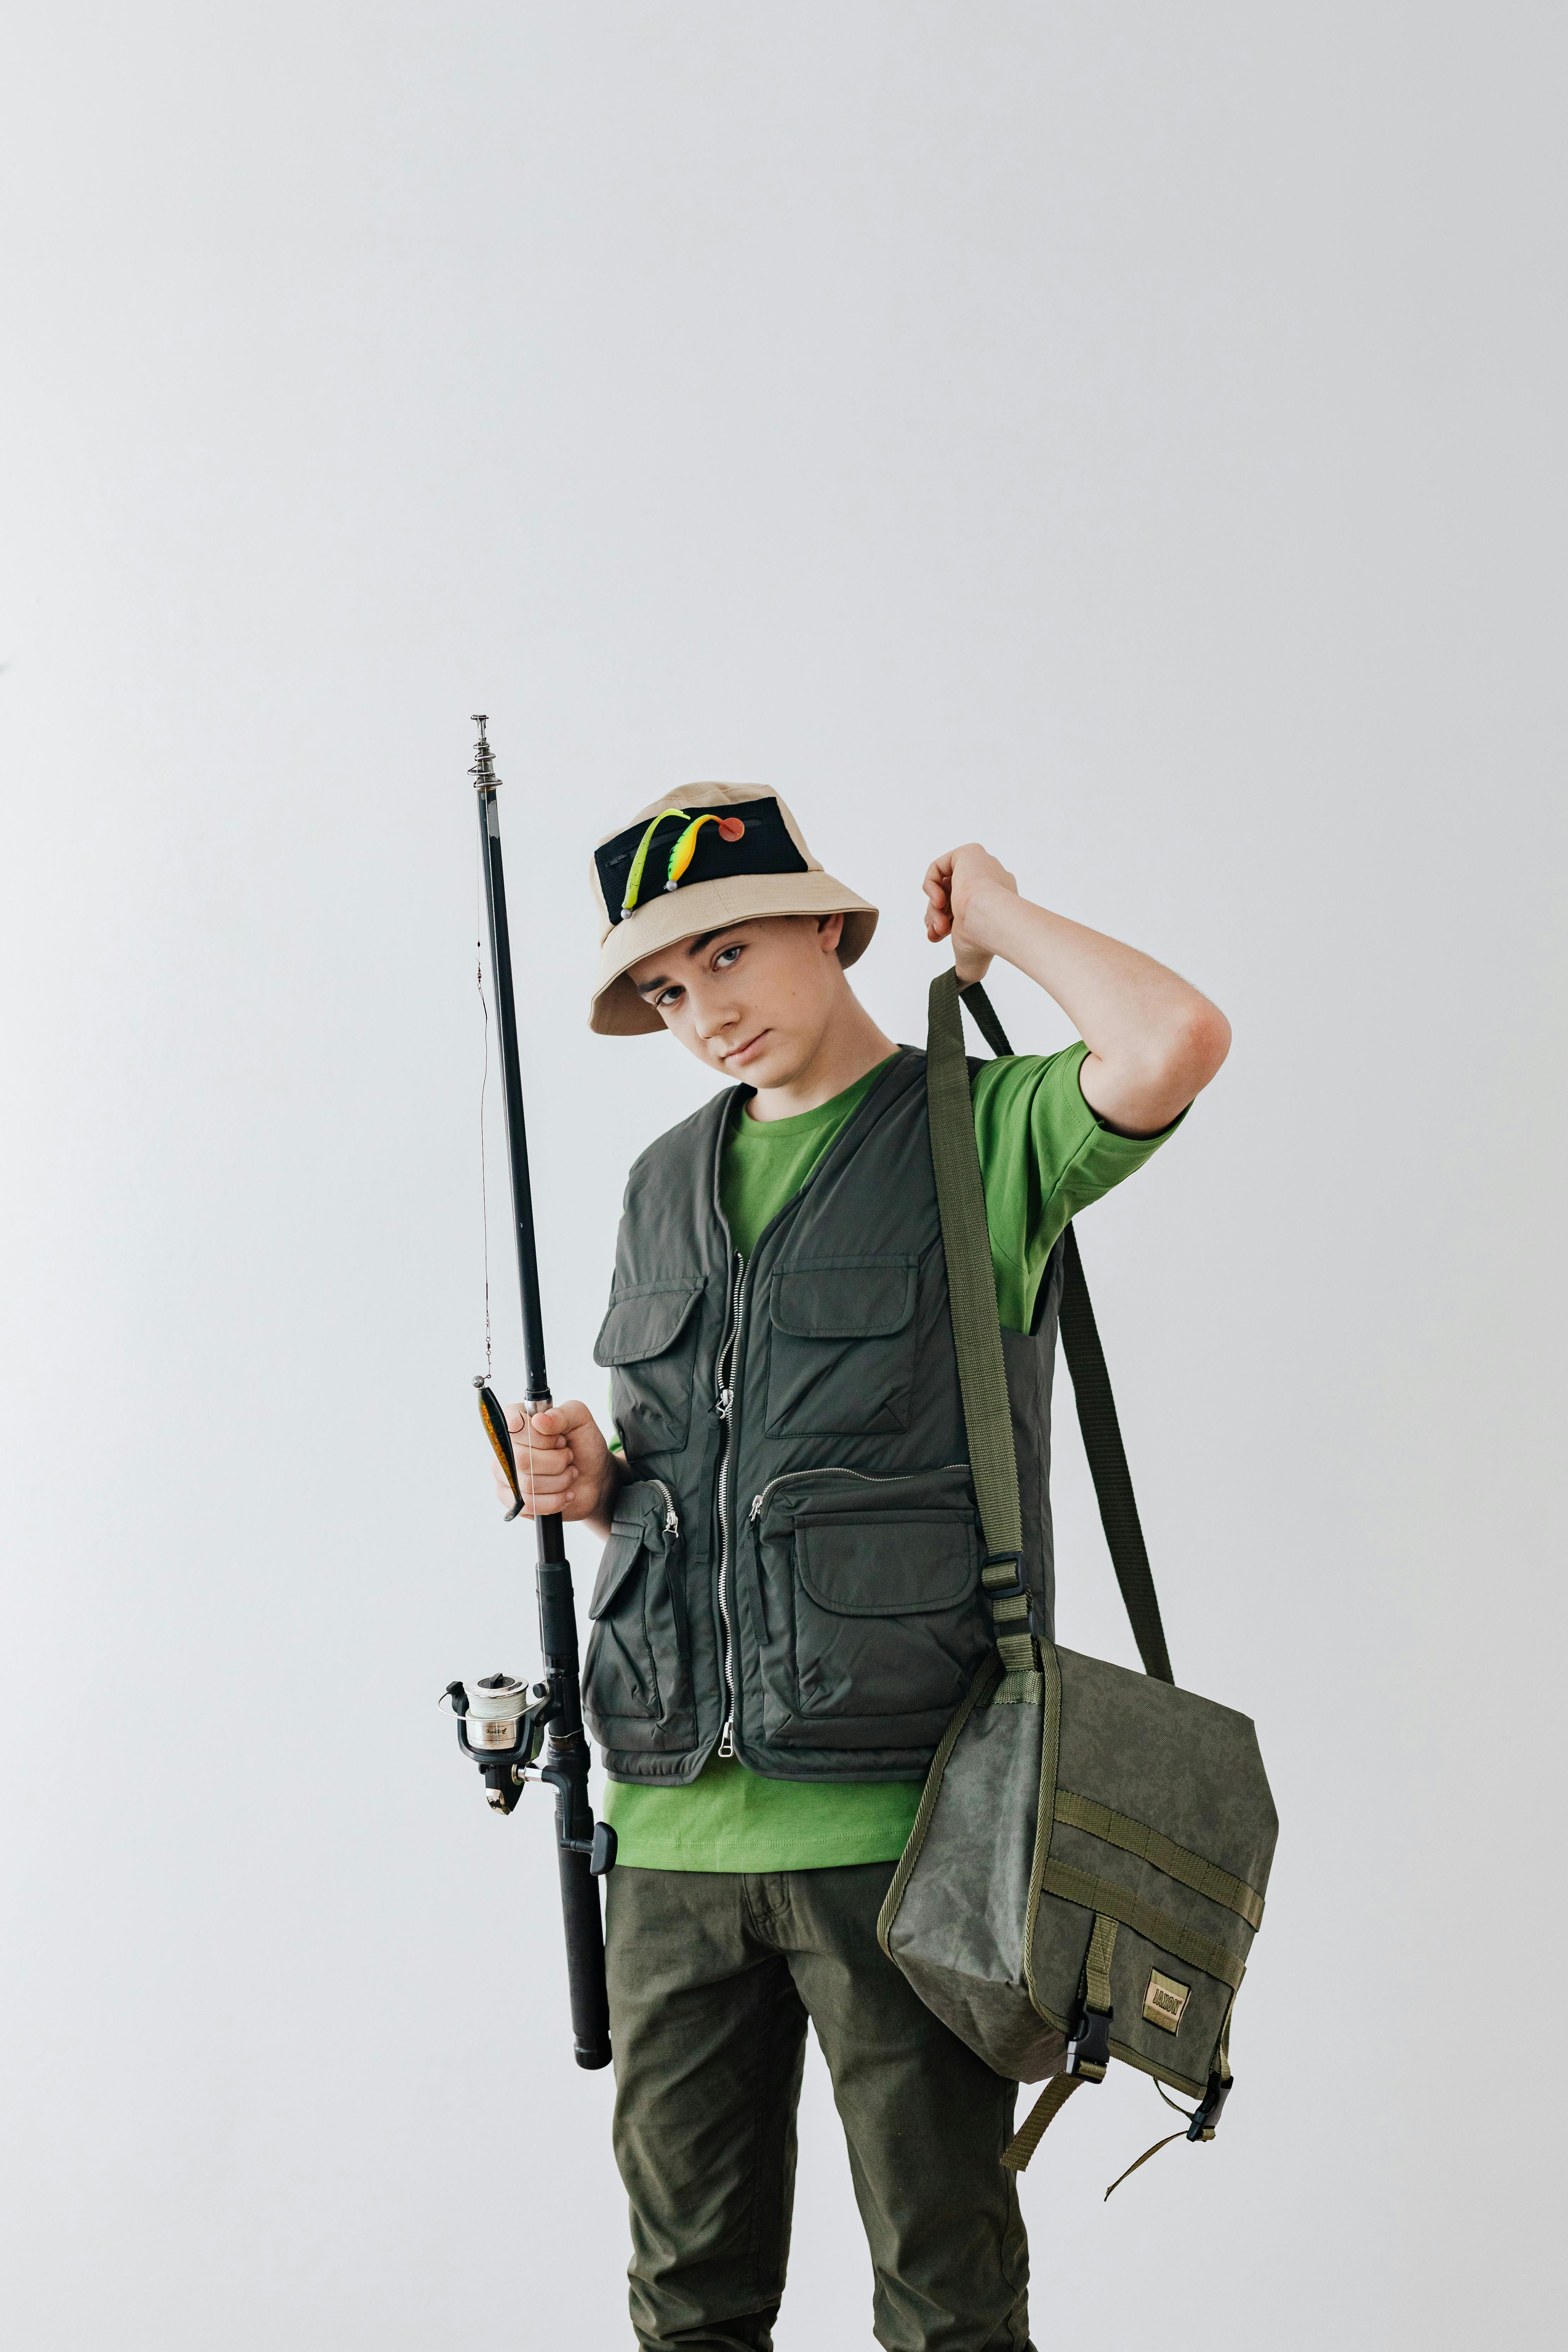 Un garçon tenant une canne à pêche | Source : Pexels